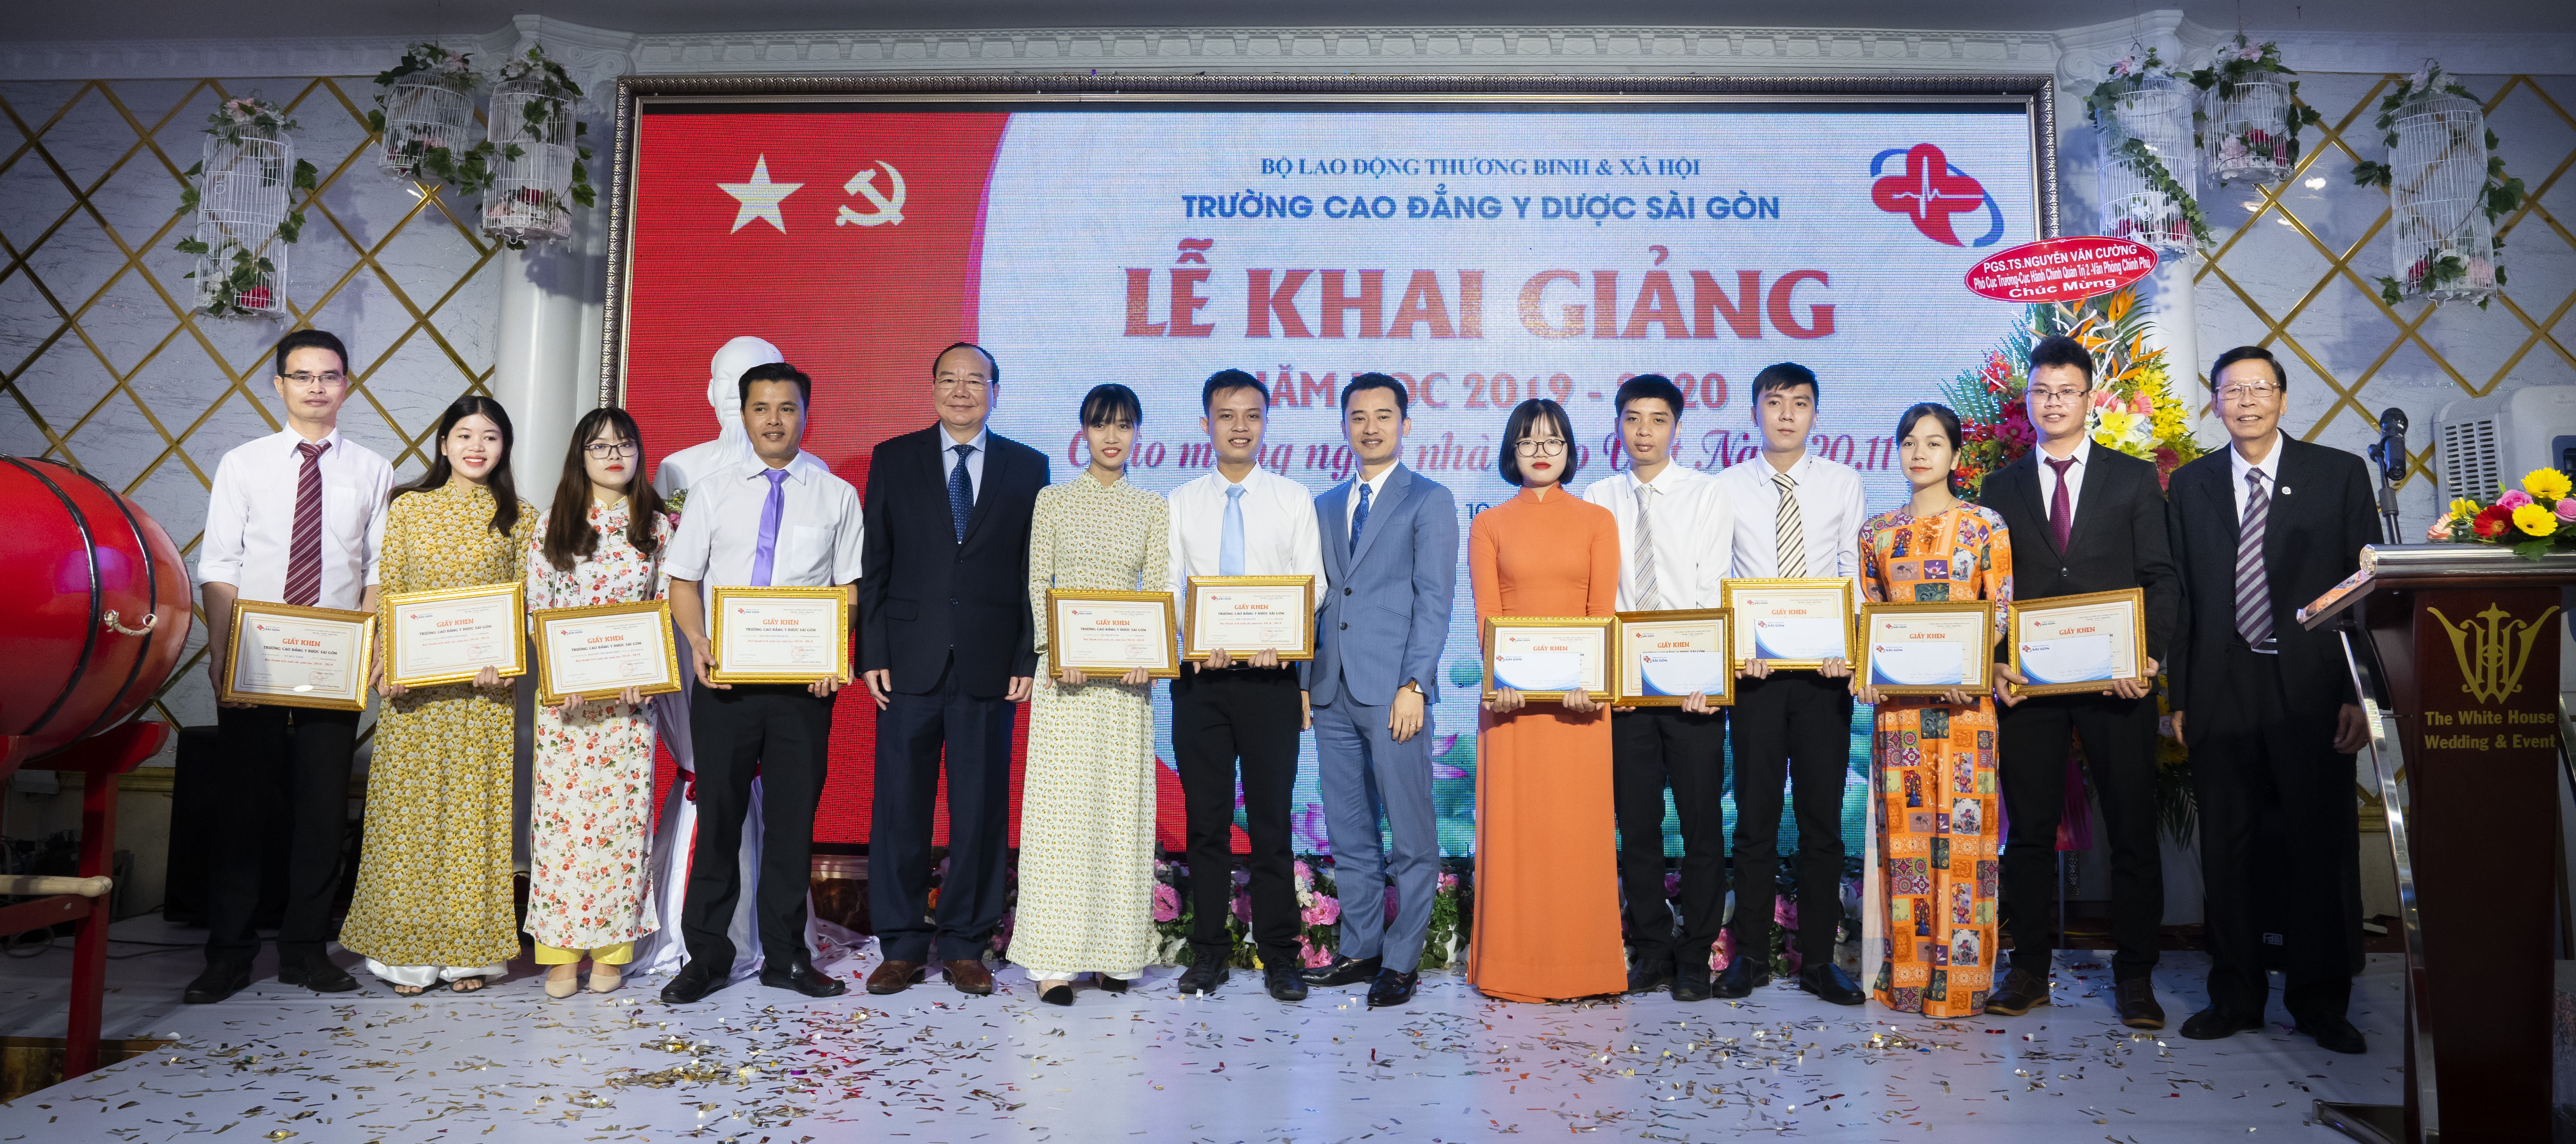 Nhà trường trao bằng khen và tuyên dương các cán bộ, giảng viên Trường Cao đẳng Y Dược Sài Gòn có thành tích tốt trong năm học vừa qua